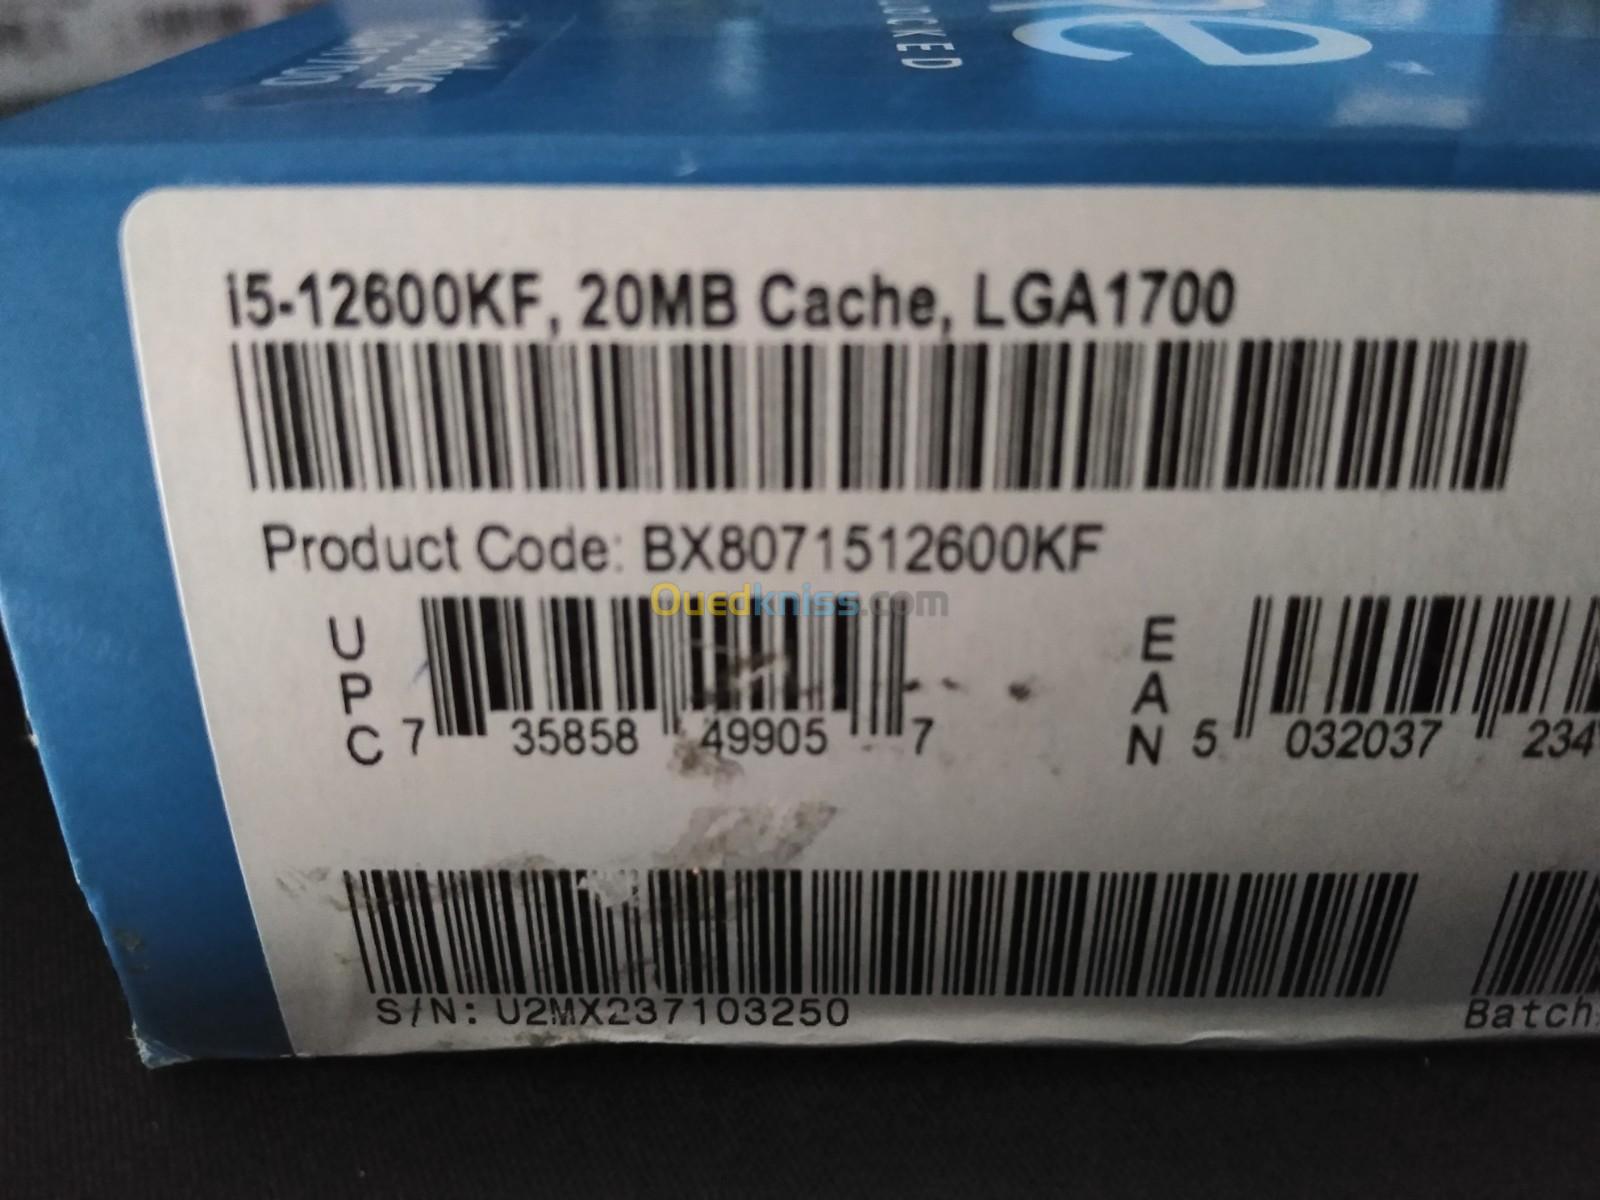 Intel Core i5 12600KF - Setif Algeria